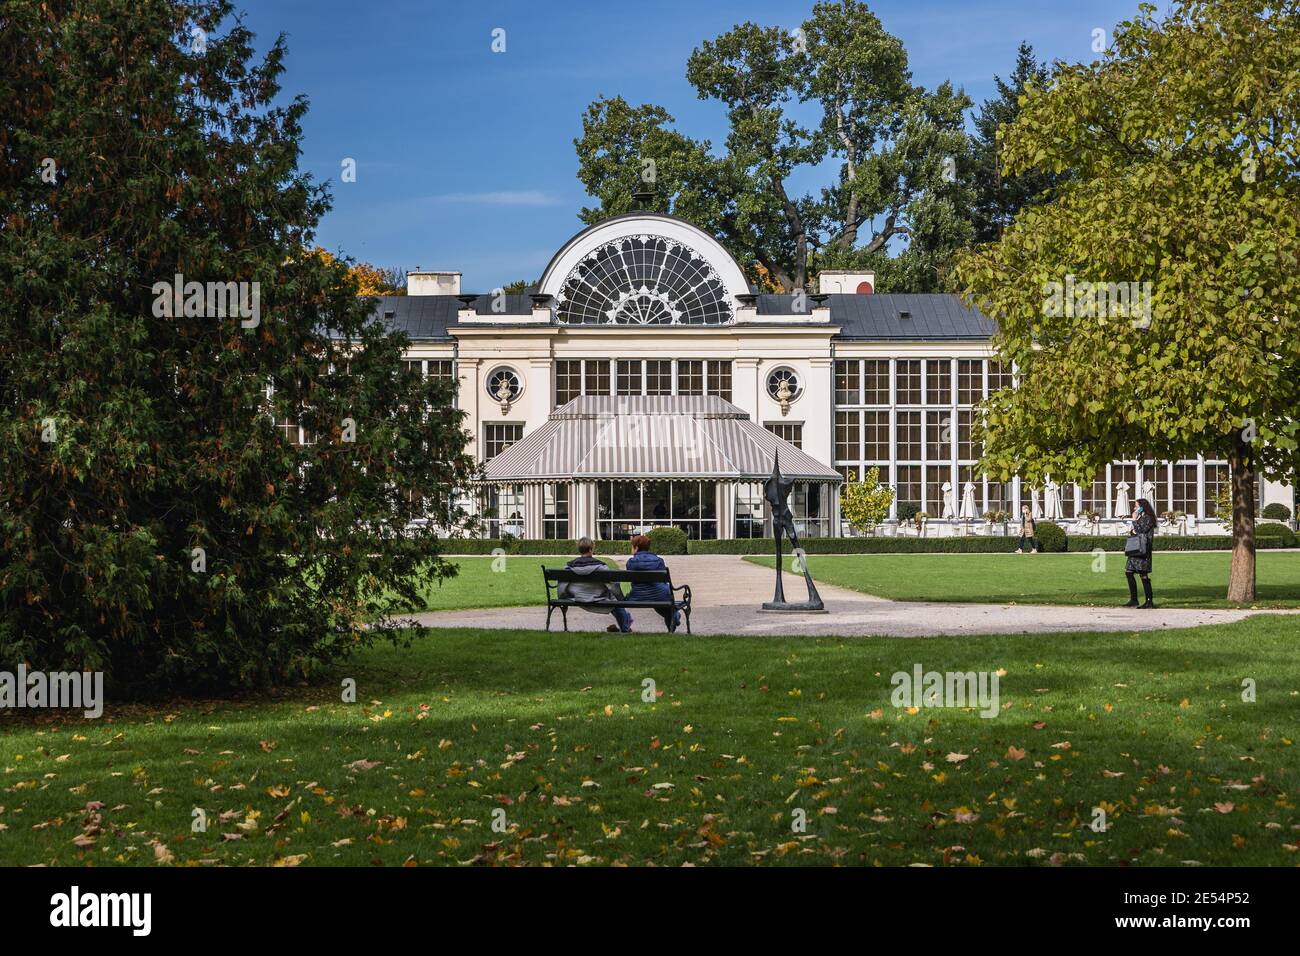 Neues Orangery Gebäude und Restaurant im Lazienkowski Park auch Lazienki Park genannt - Königliche Bäder, größter Park in Warschau Stadt, Polen Stockfoto